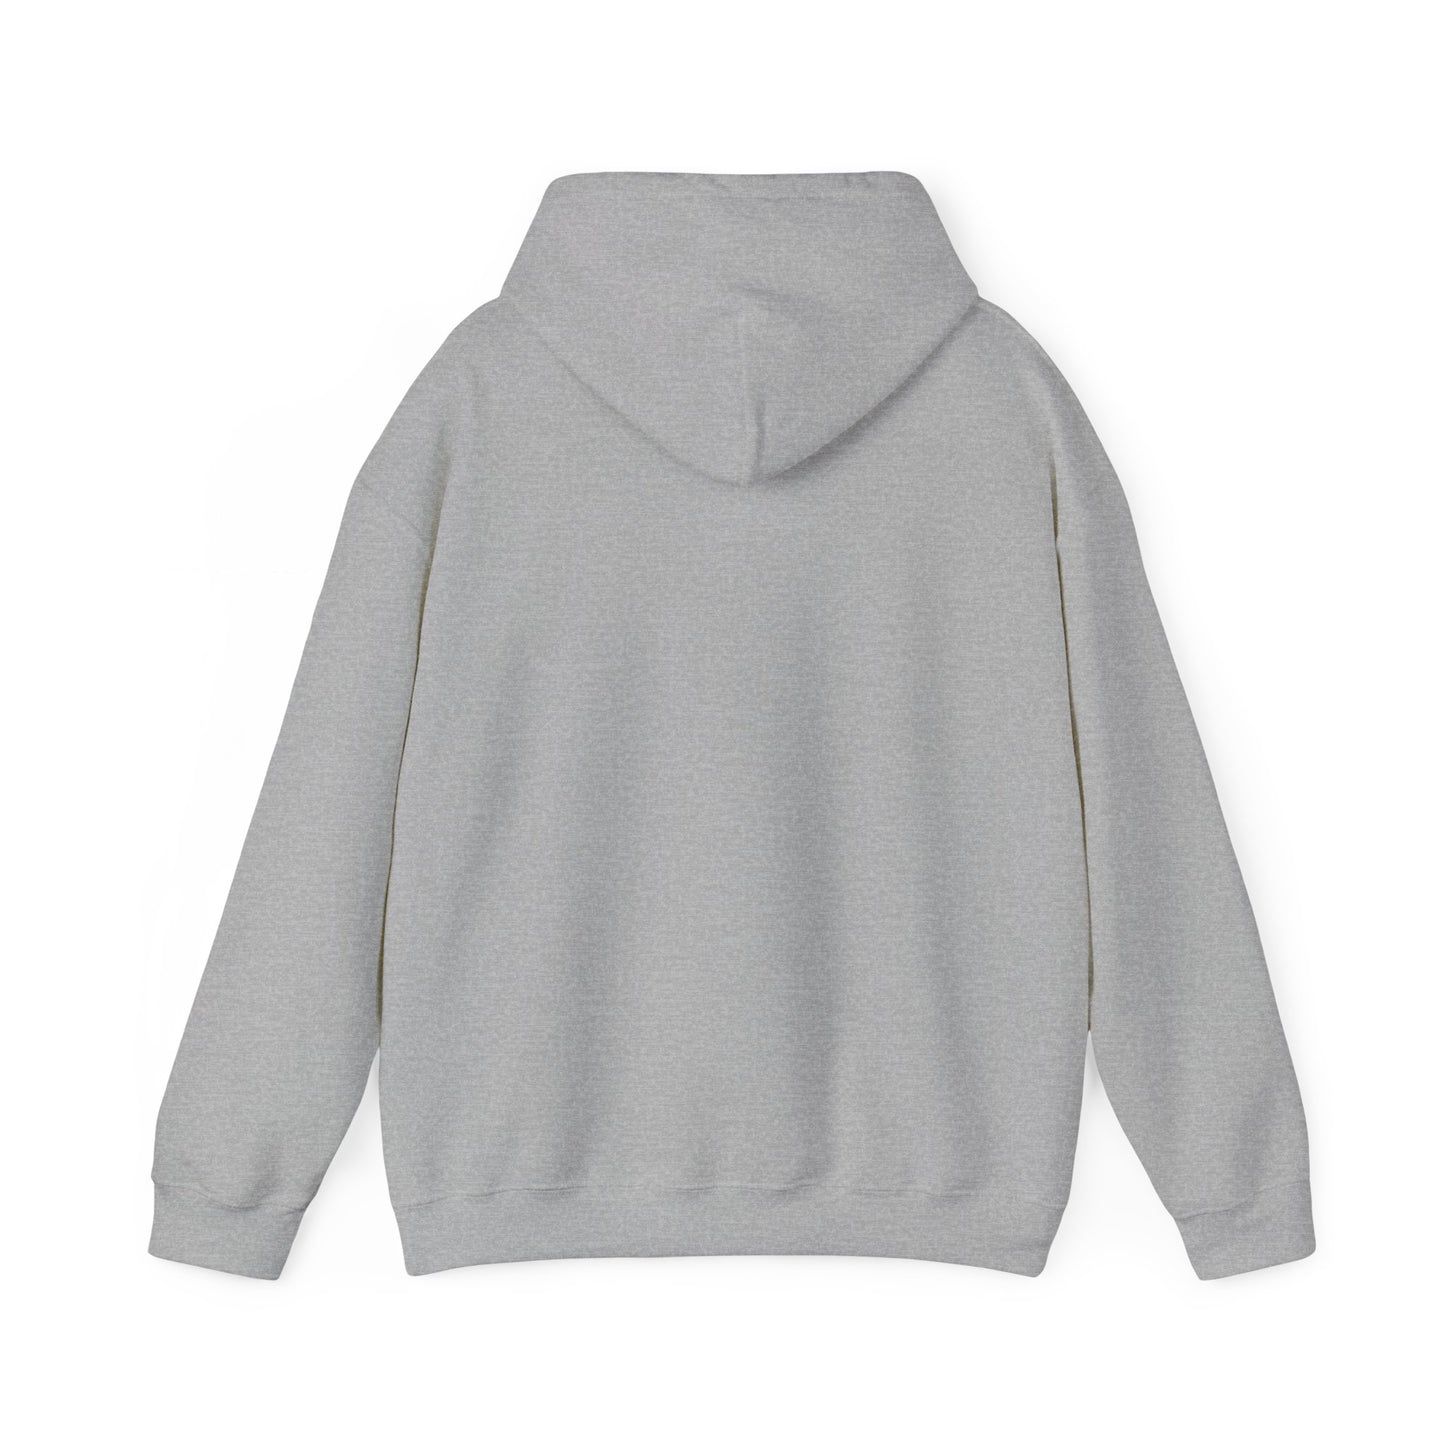 Choose to be Peaceful - Hooded Sweatshirt